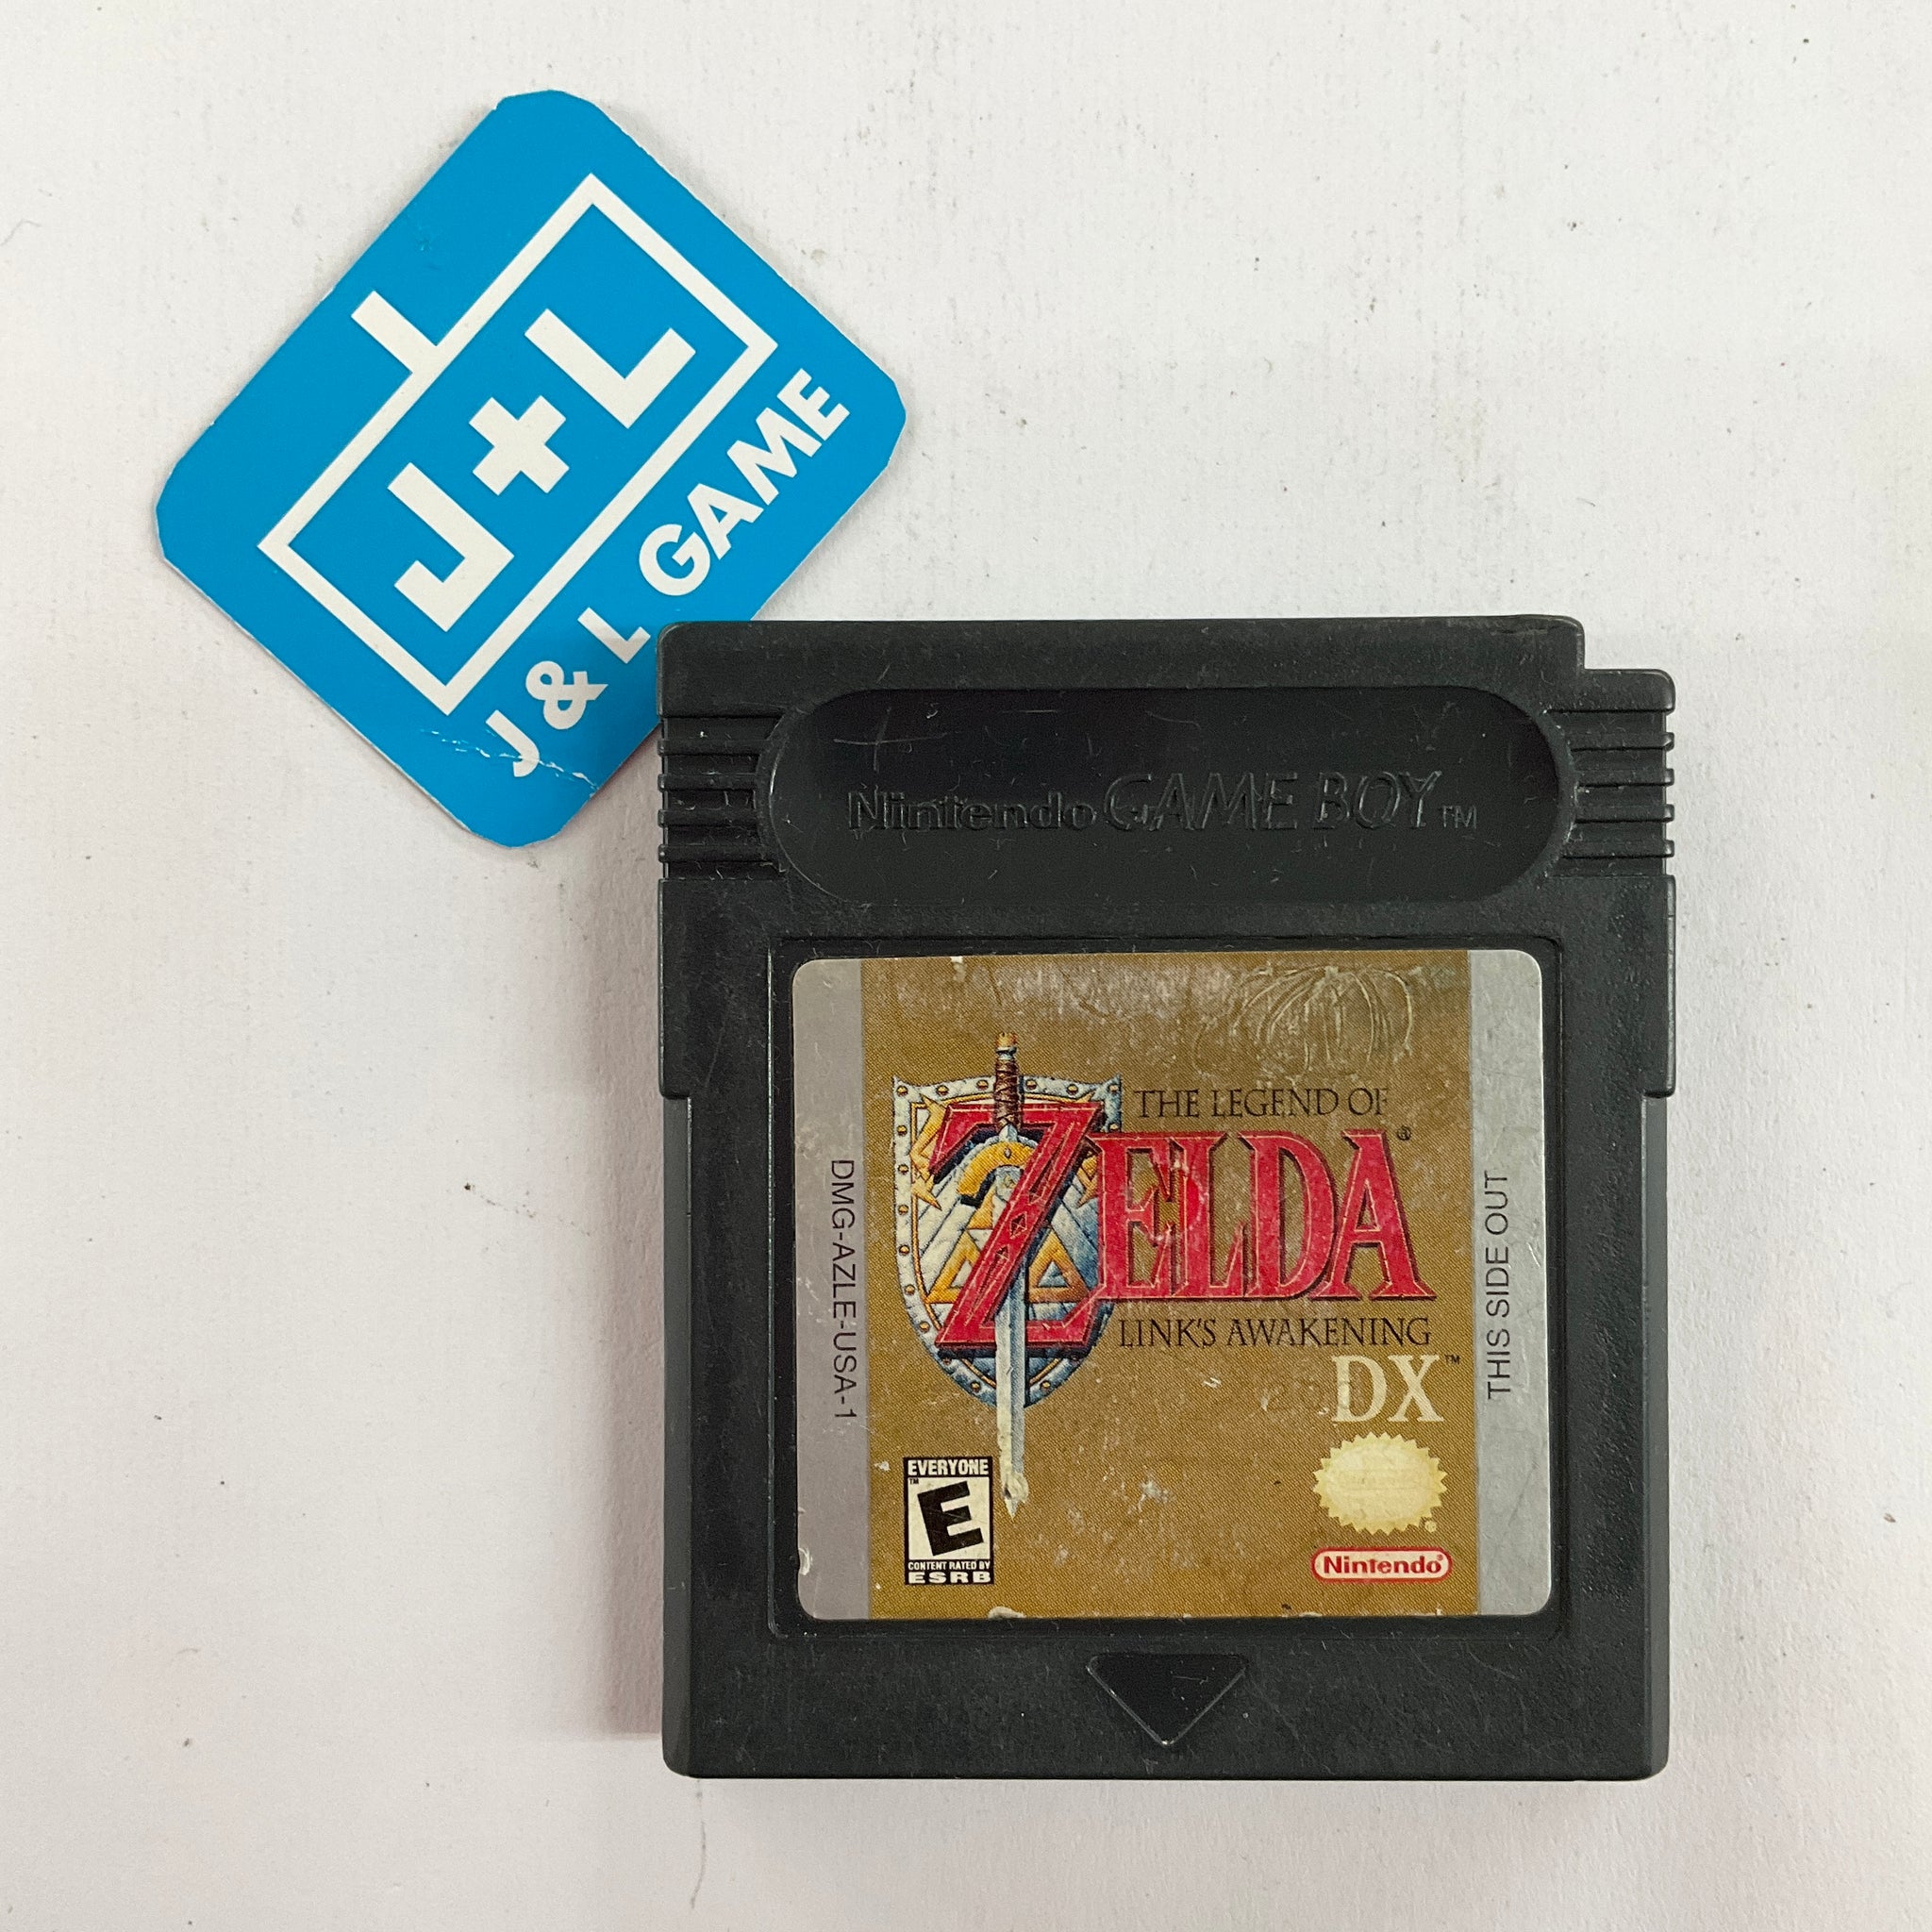 The Legend of Zelda: Link's Awakening DX (GBC), Part 2